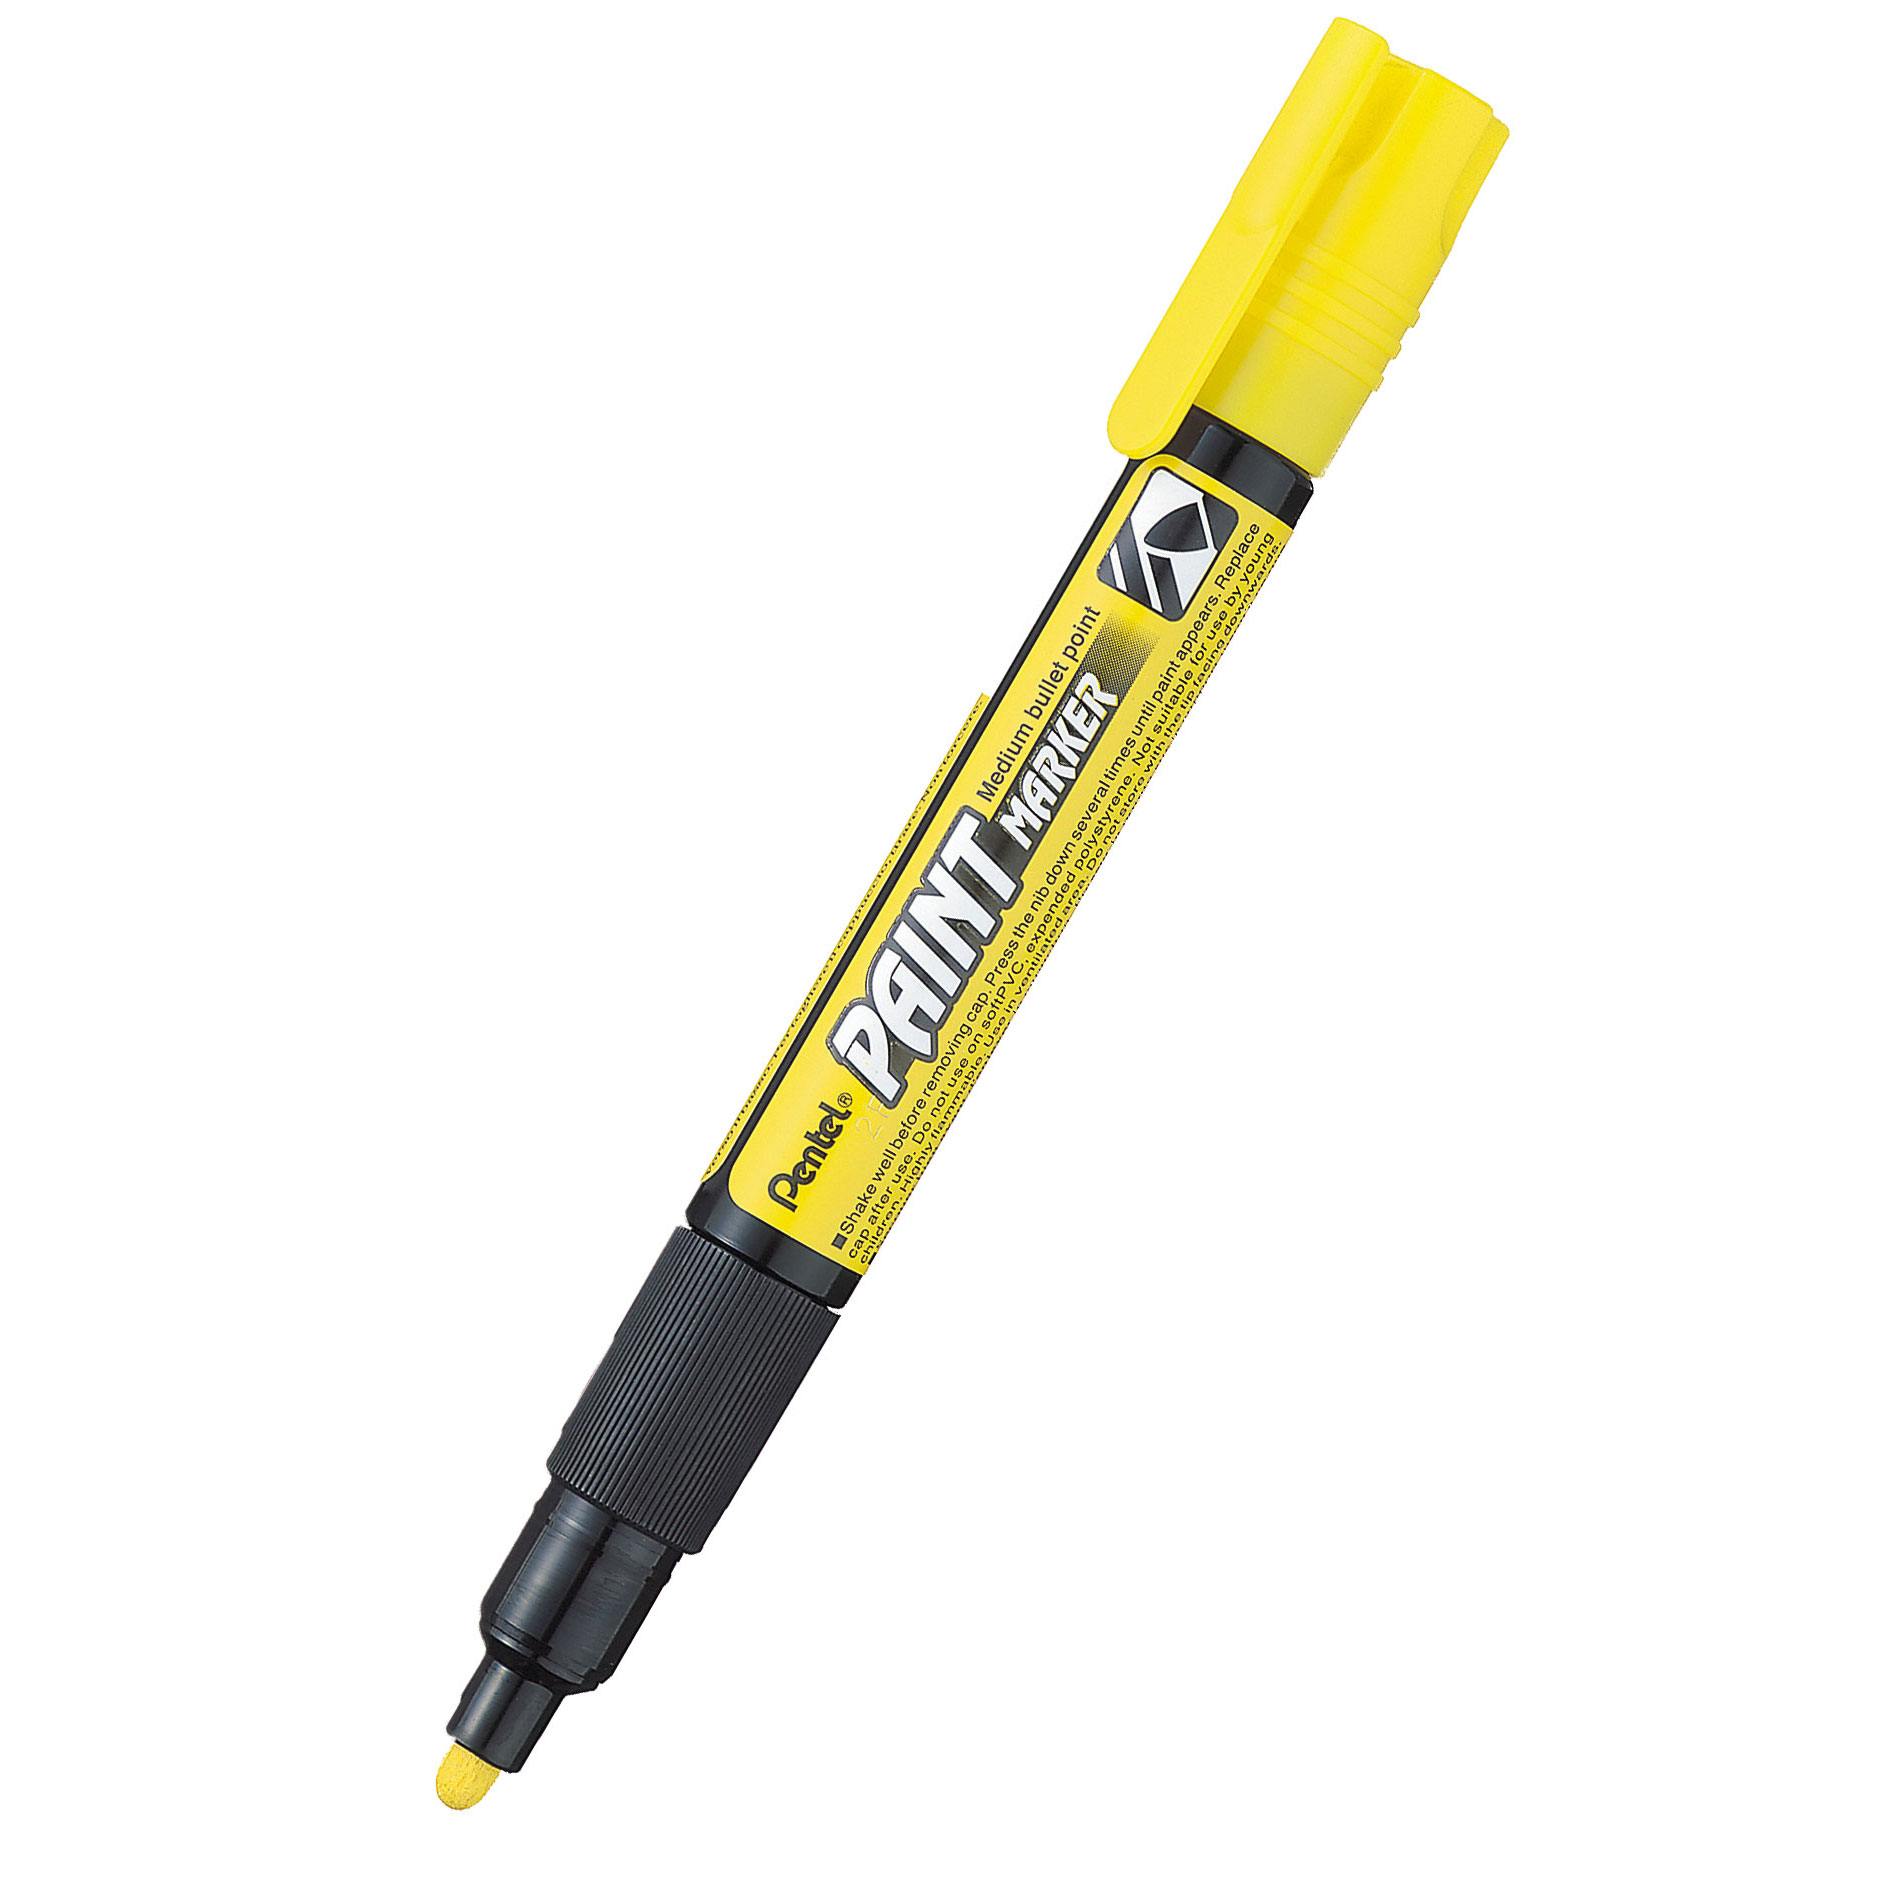 Popisovač lakový Pentel MMP20 Paint Marker, žlutý